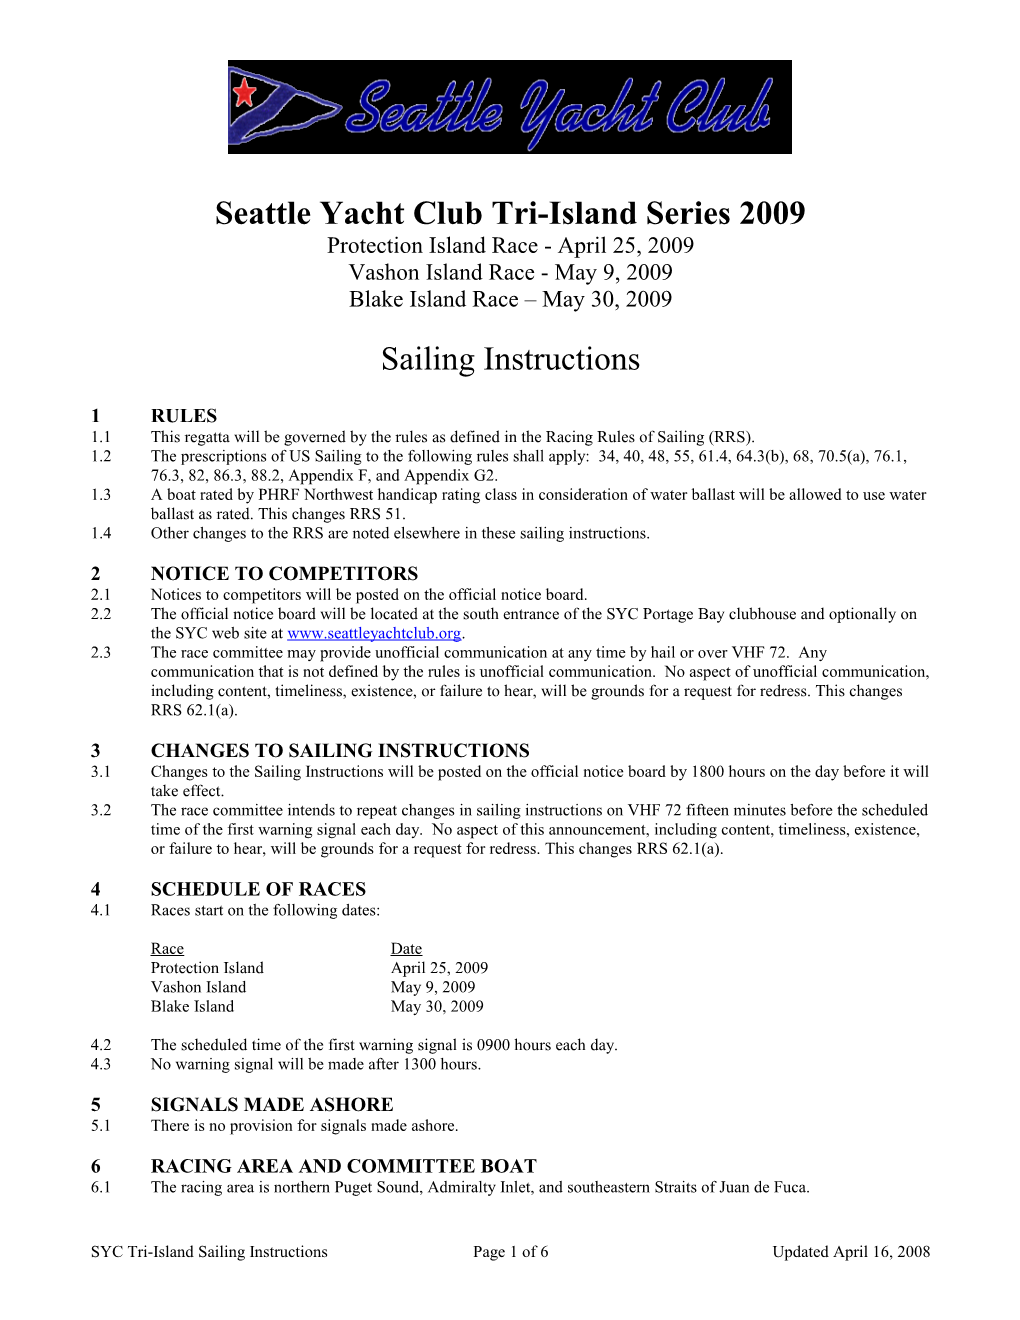 SYC Regatta Sailing Instructions